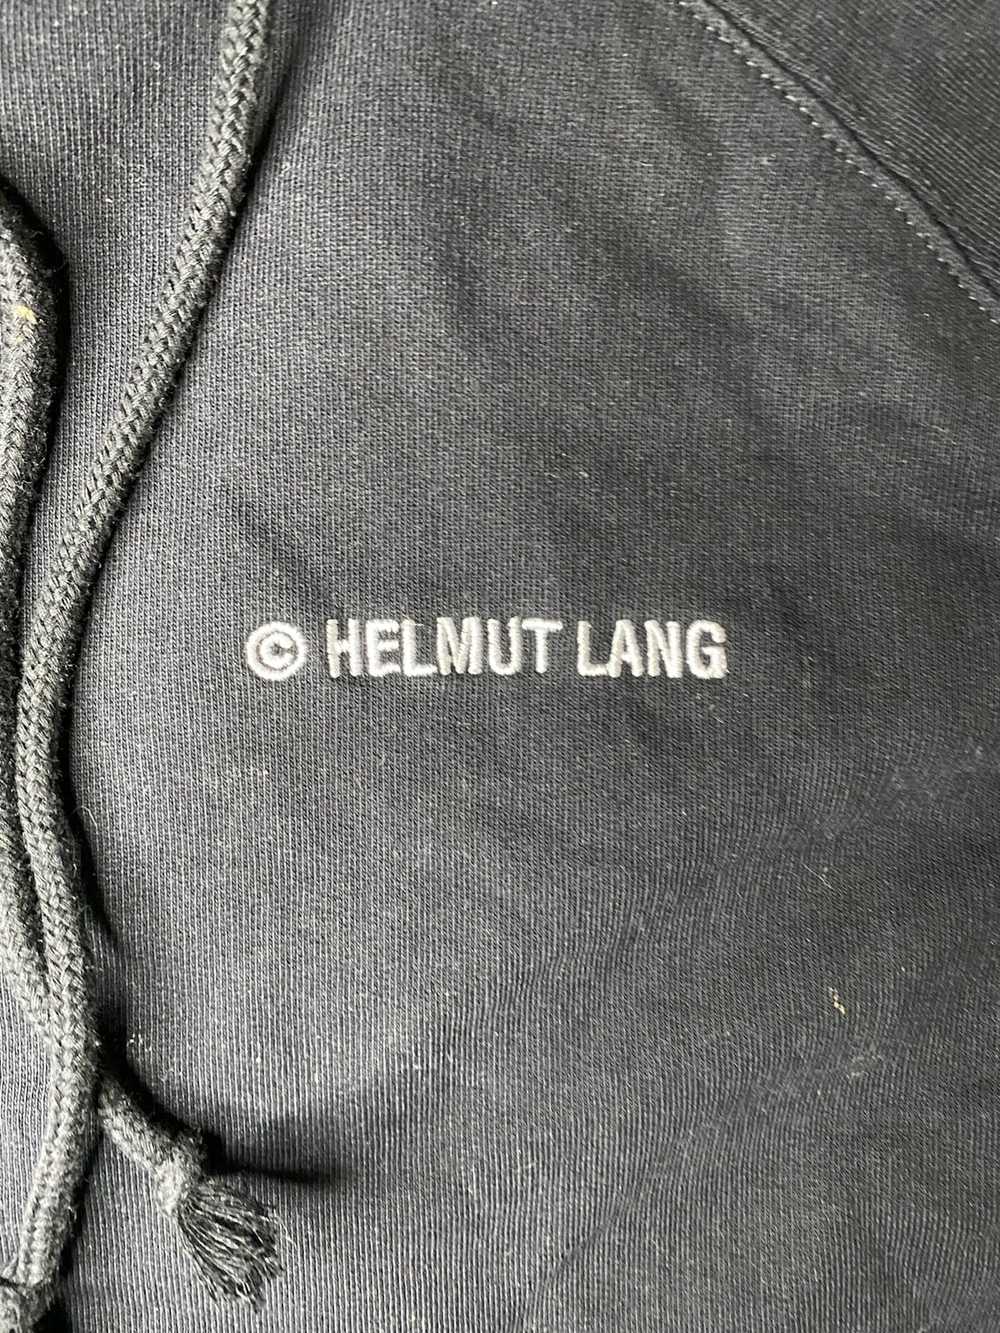 Designer × Helmut Lang × Vintage Helmut Lang Hood… - image 2